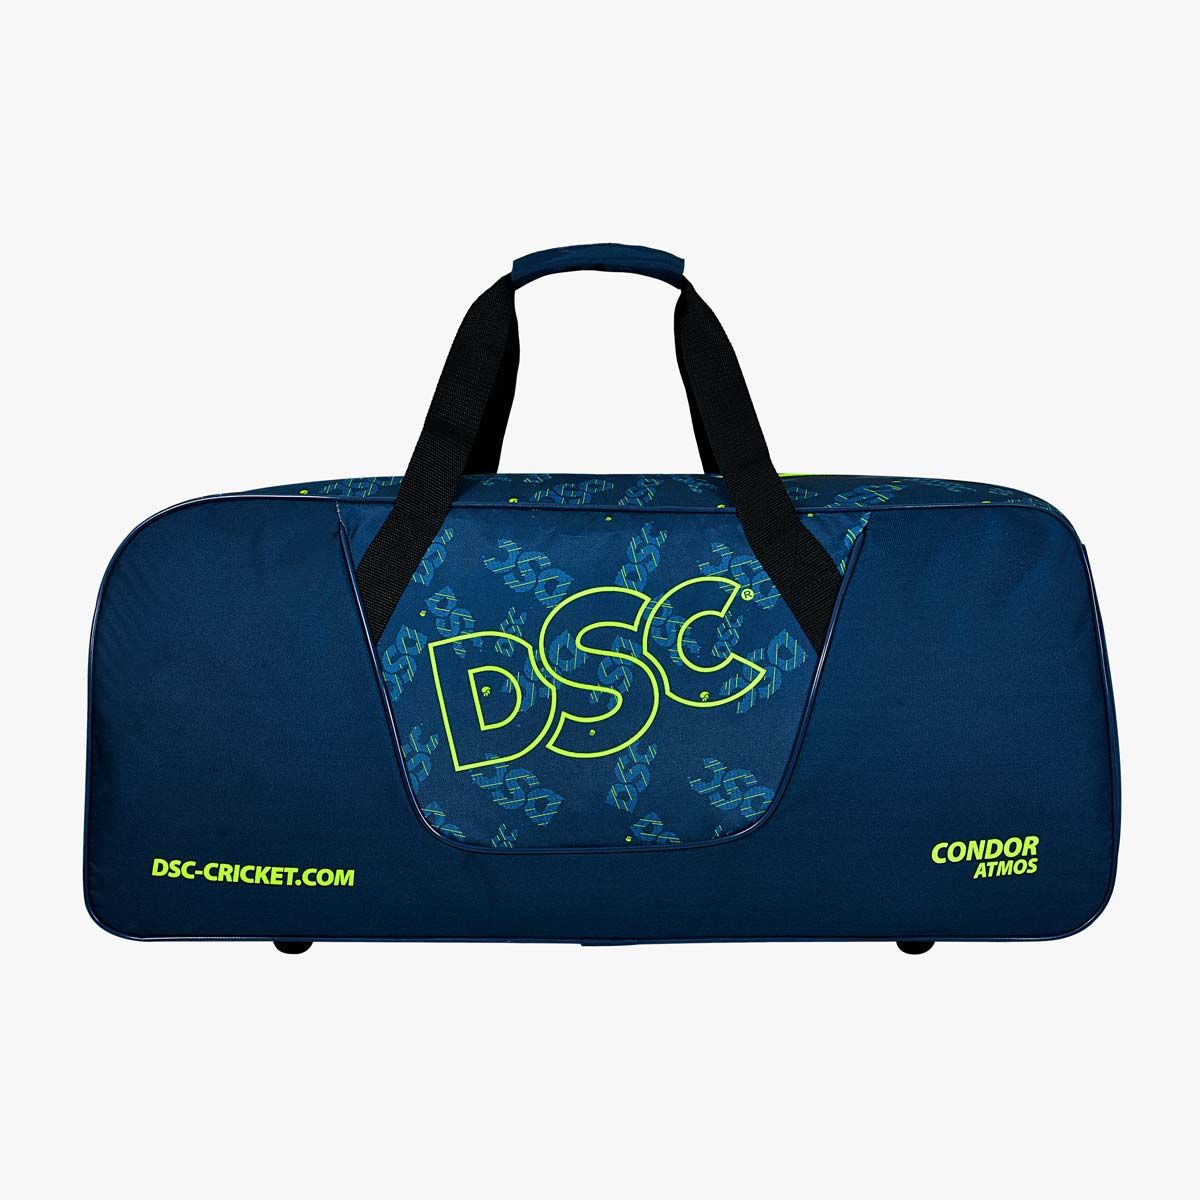 DSC Condor Atmos Cricket Kit Bag